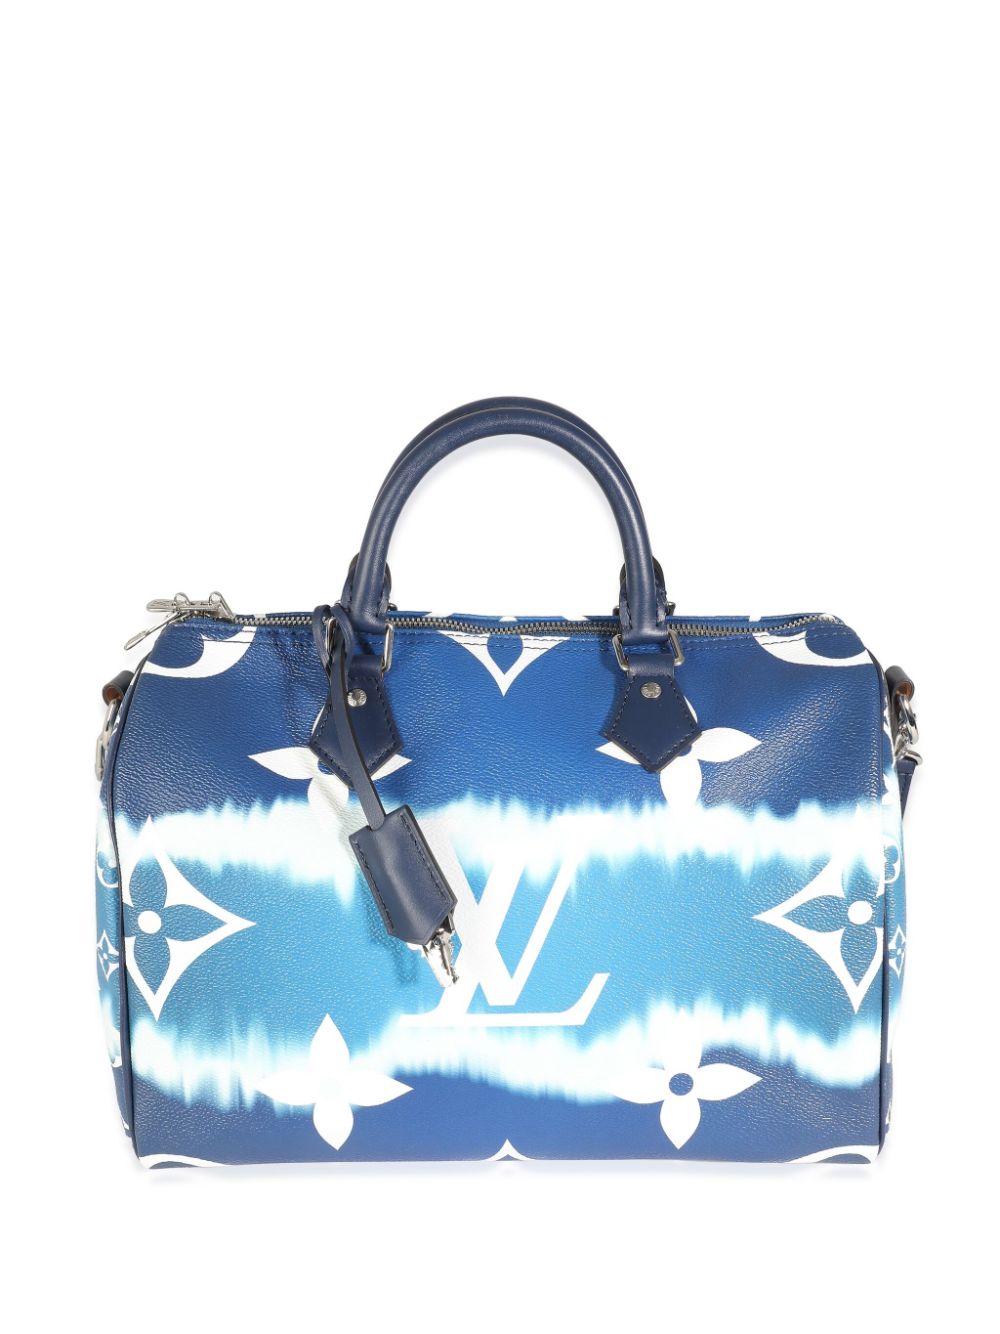 Louis Vuitton Pre-Owned 2020 Speedy 30 Bandoulière two-way handbag - Blue von Louis Vuitton Pre-Owned